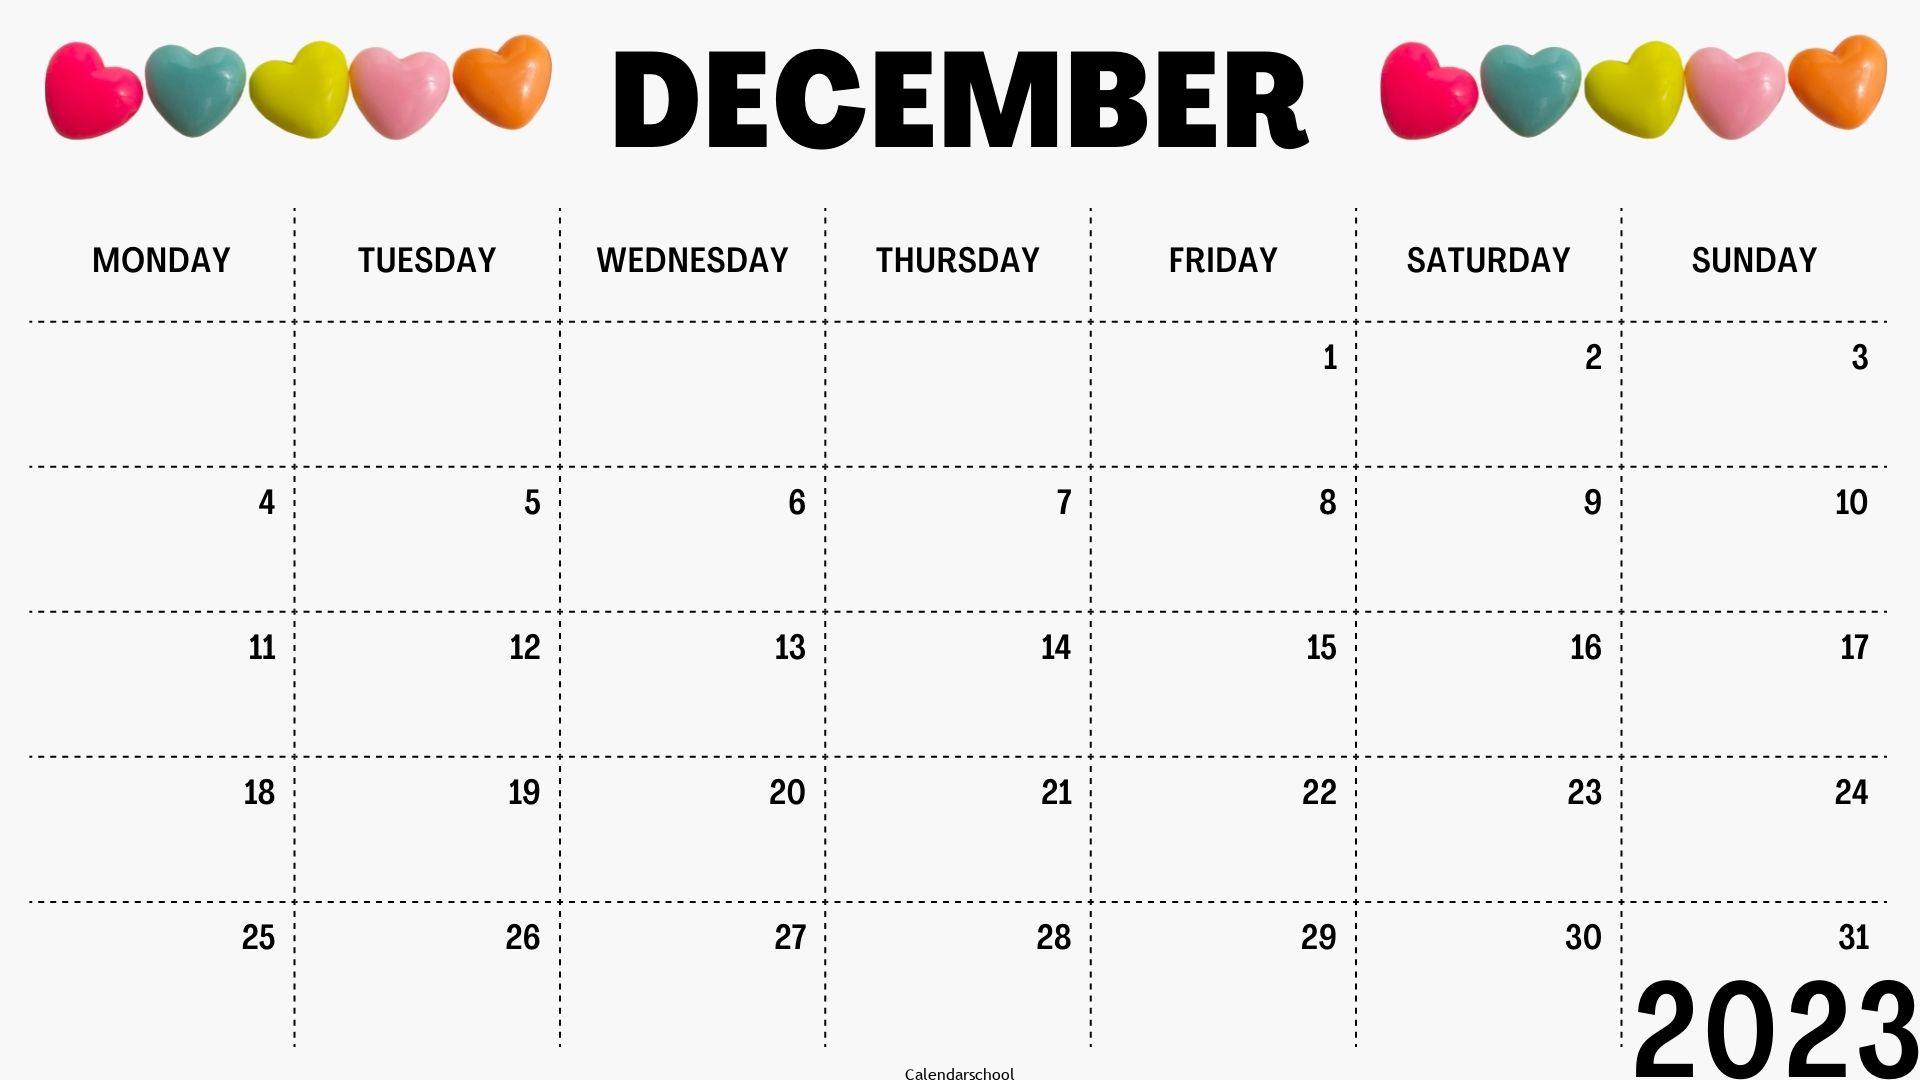 Islamic Calendar 2023 December